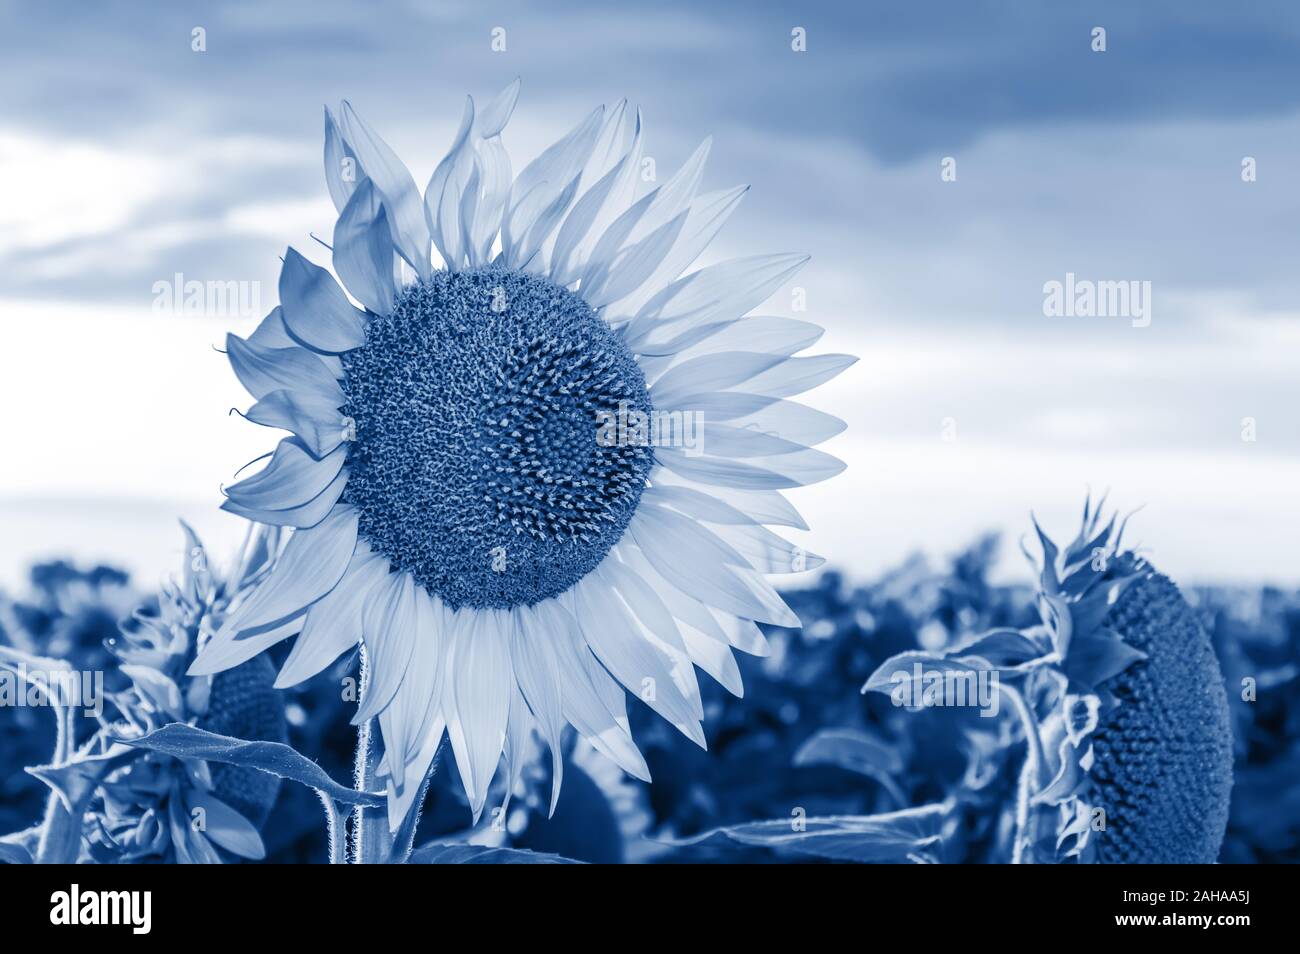 Sonnenblumenfeld. In der Nähe von blühenden Sonnenblumen getönten in trendigen Classic Blau - die Farbe des Jahres 2020. Sommer Landschaft Stockfoto